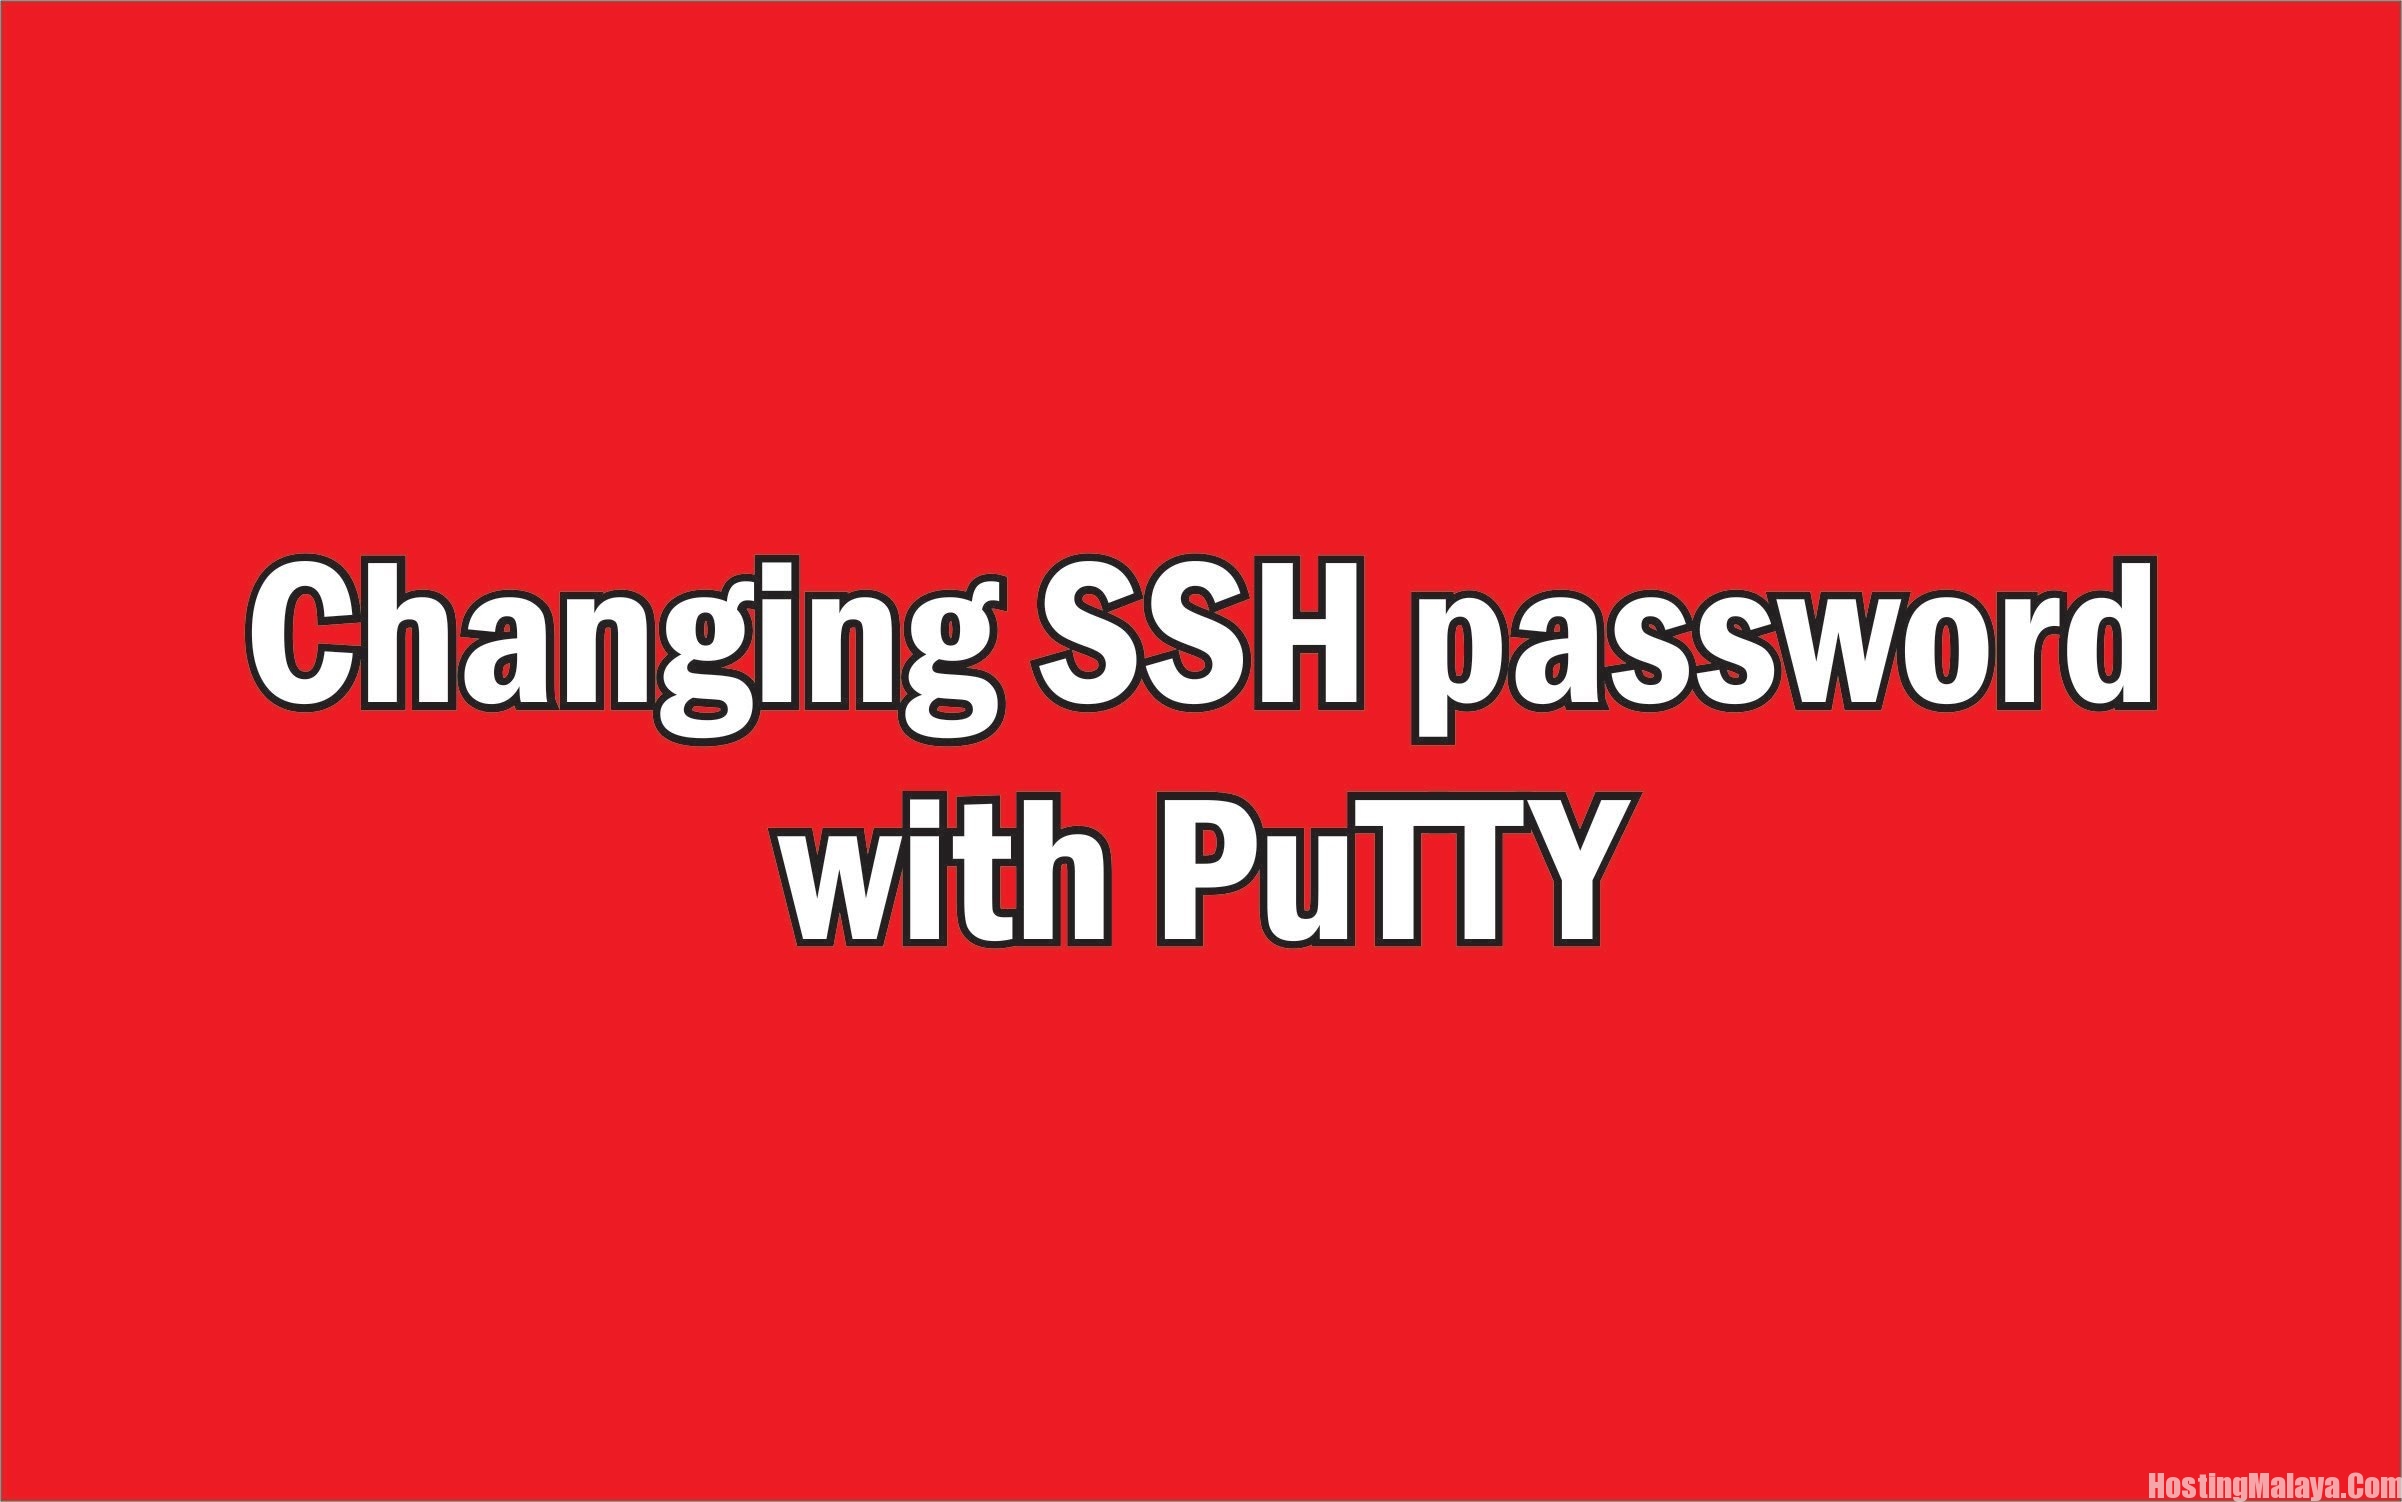 cara menukar password server putty